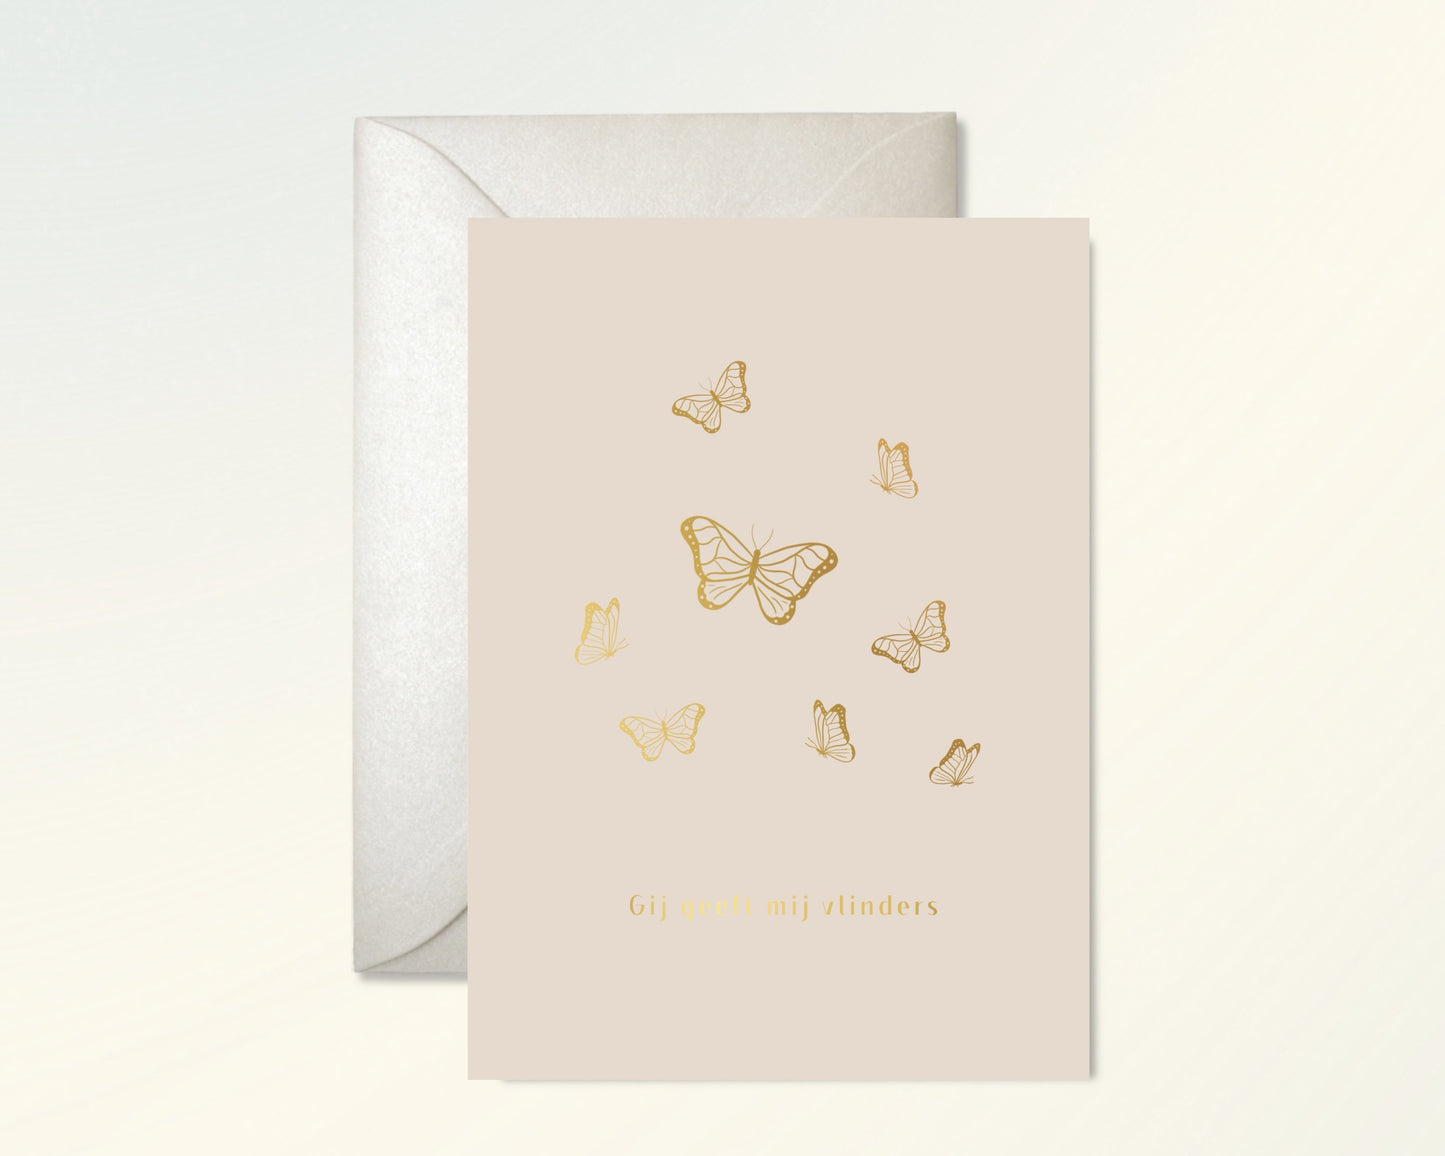 Gij geeft mij vlinders Greeting Cards - Honeypress Design